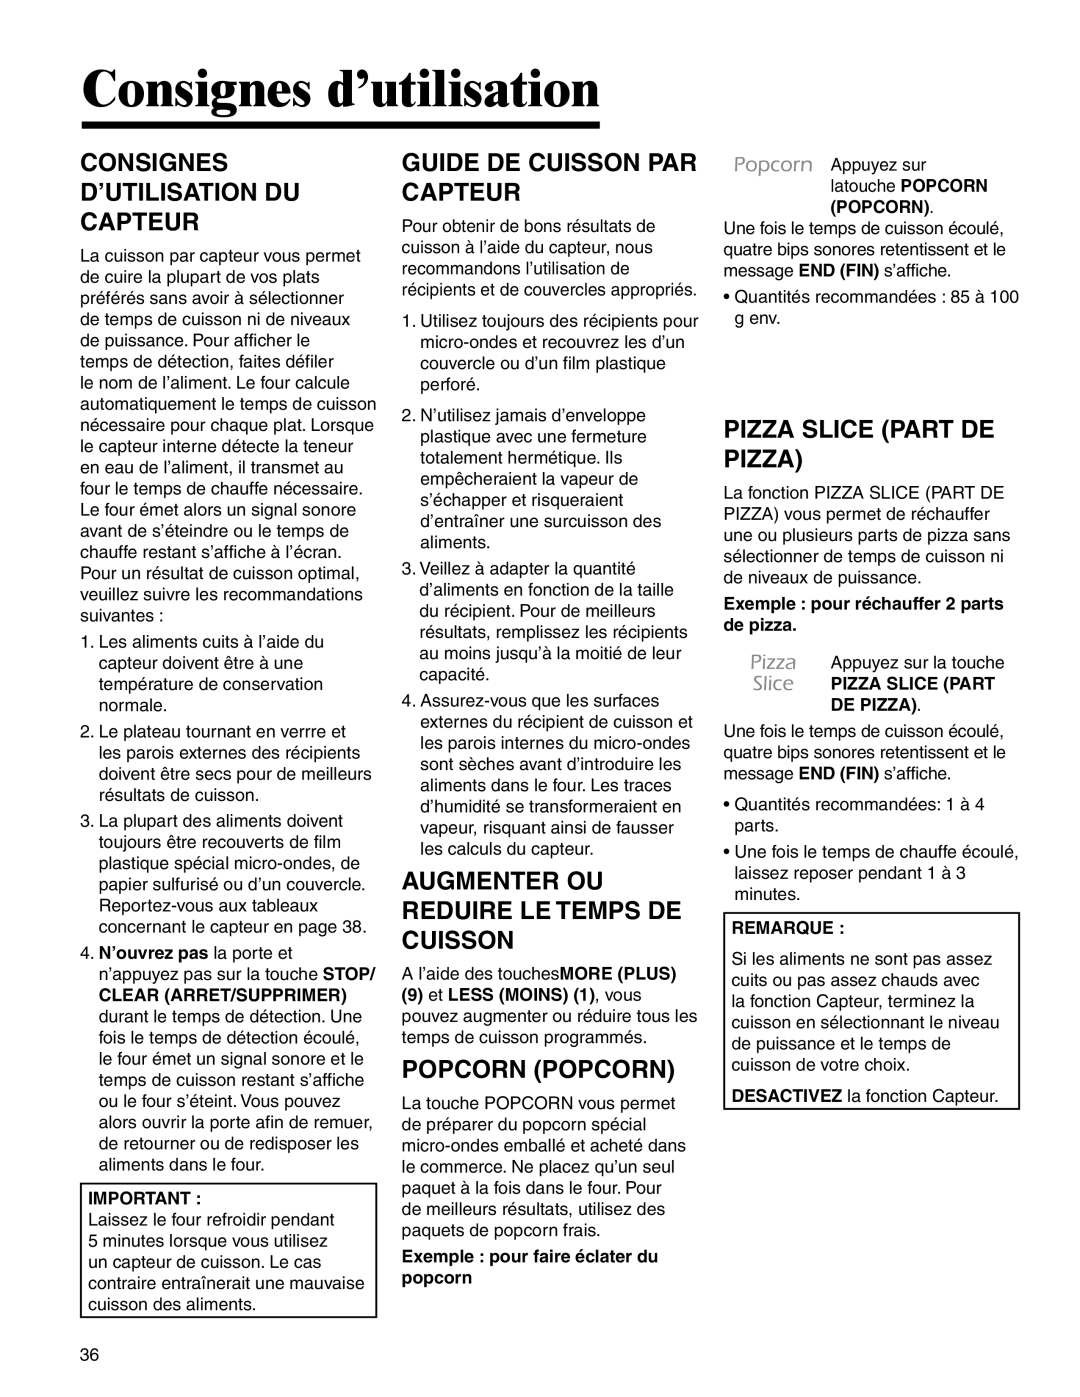 Maytag UMC5200 BAB/W/S, UMC5200BCB/W/S Consignes D’Utilisation Du Capteur, Guide De Cuisson Par Capteur, Popcorn Popcorn 